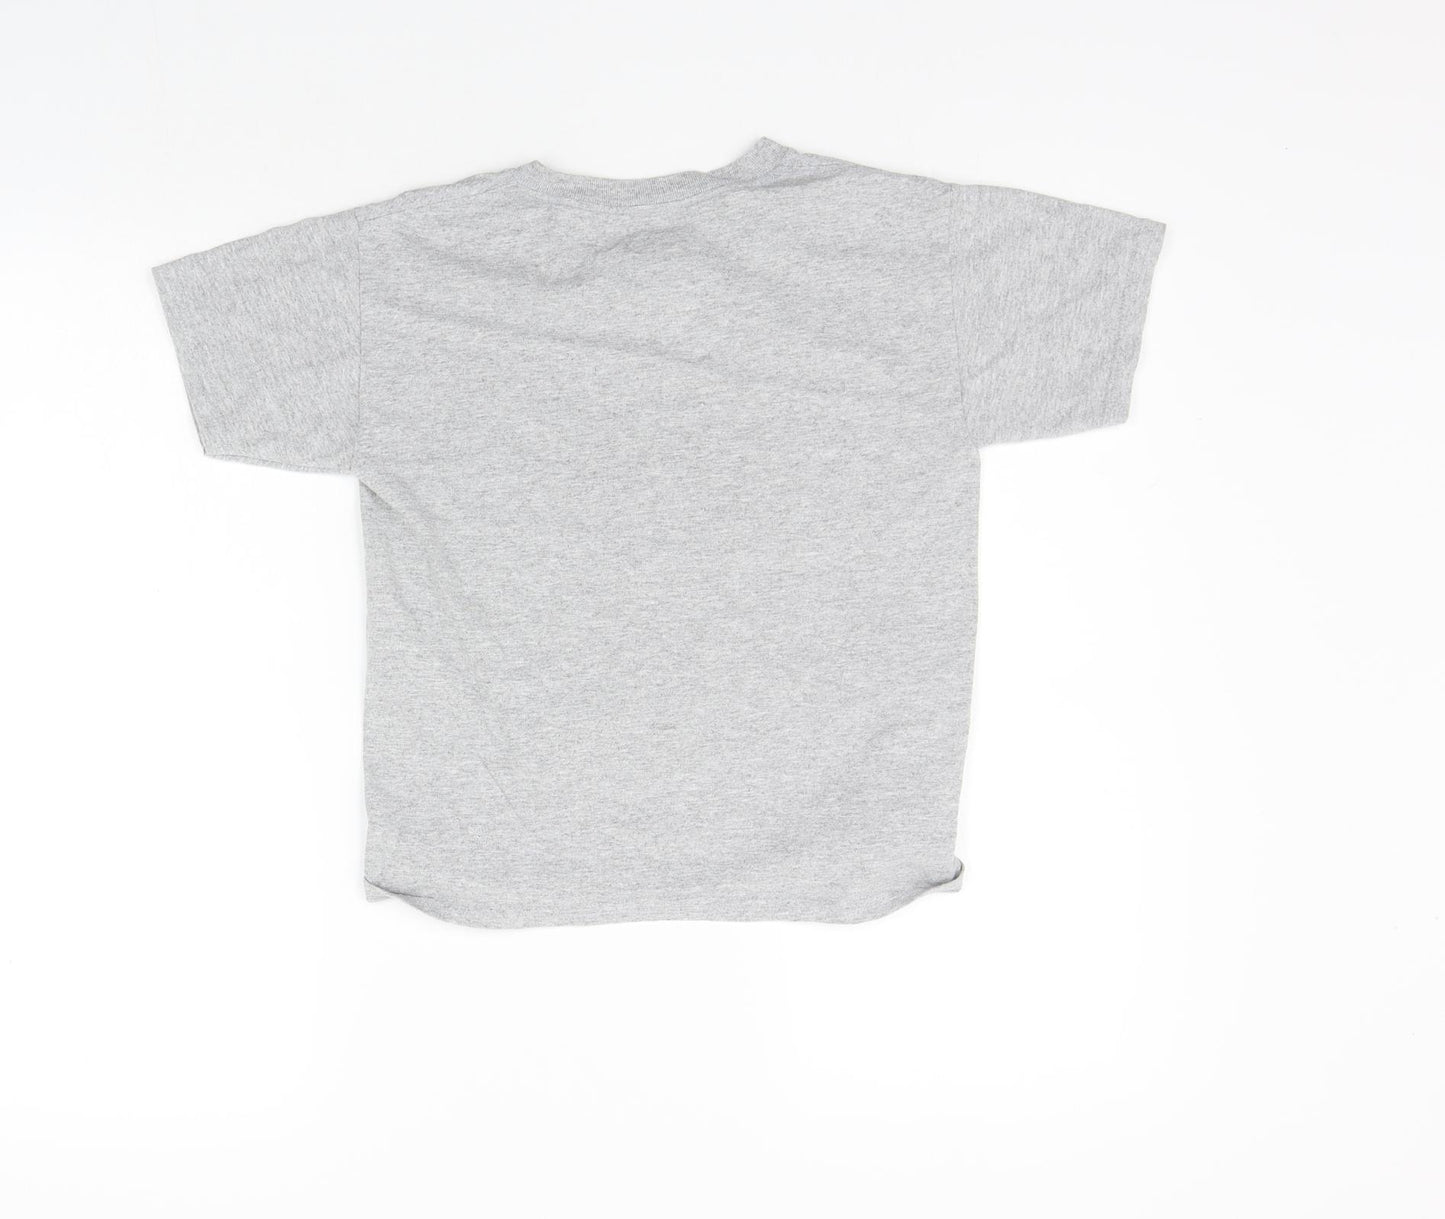 Newcastle United Boys Grey   Basic T-Shirt Size S